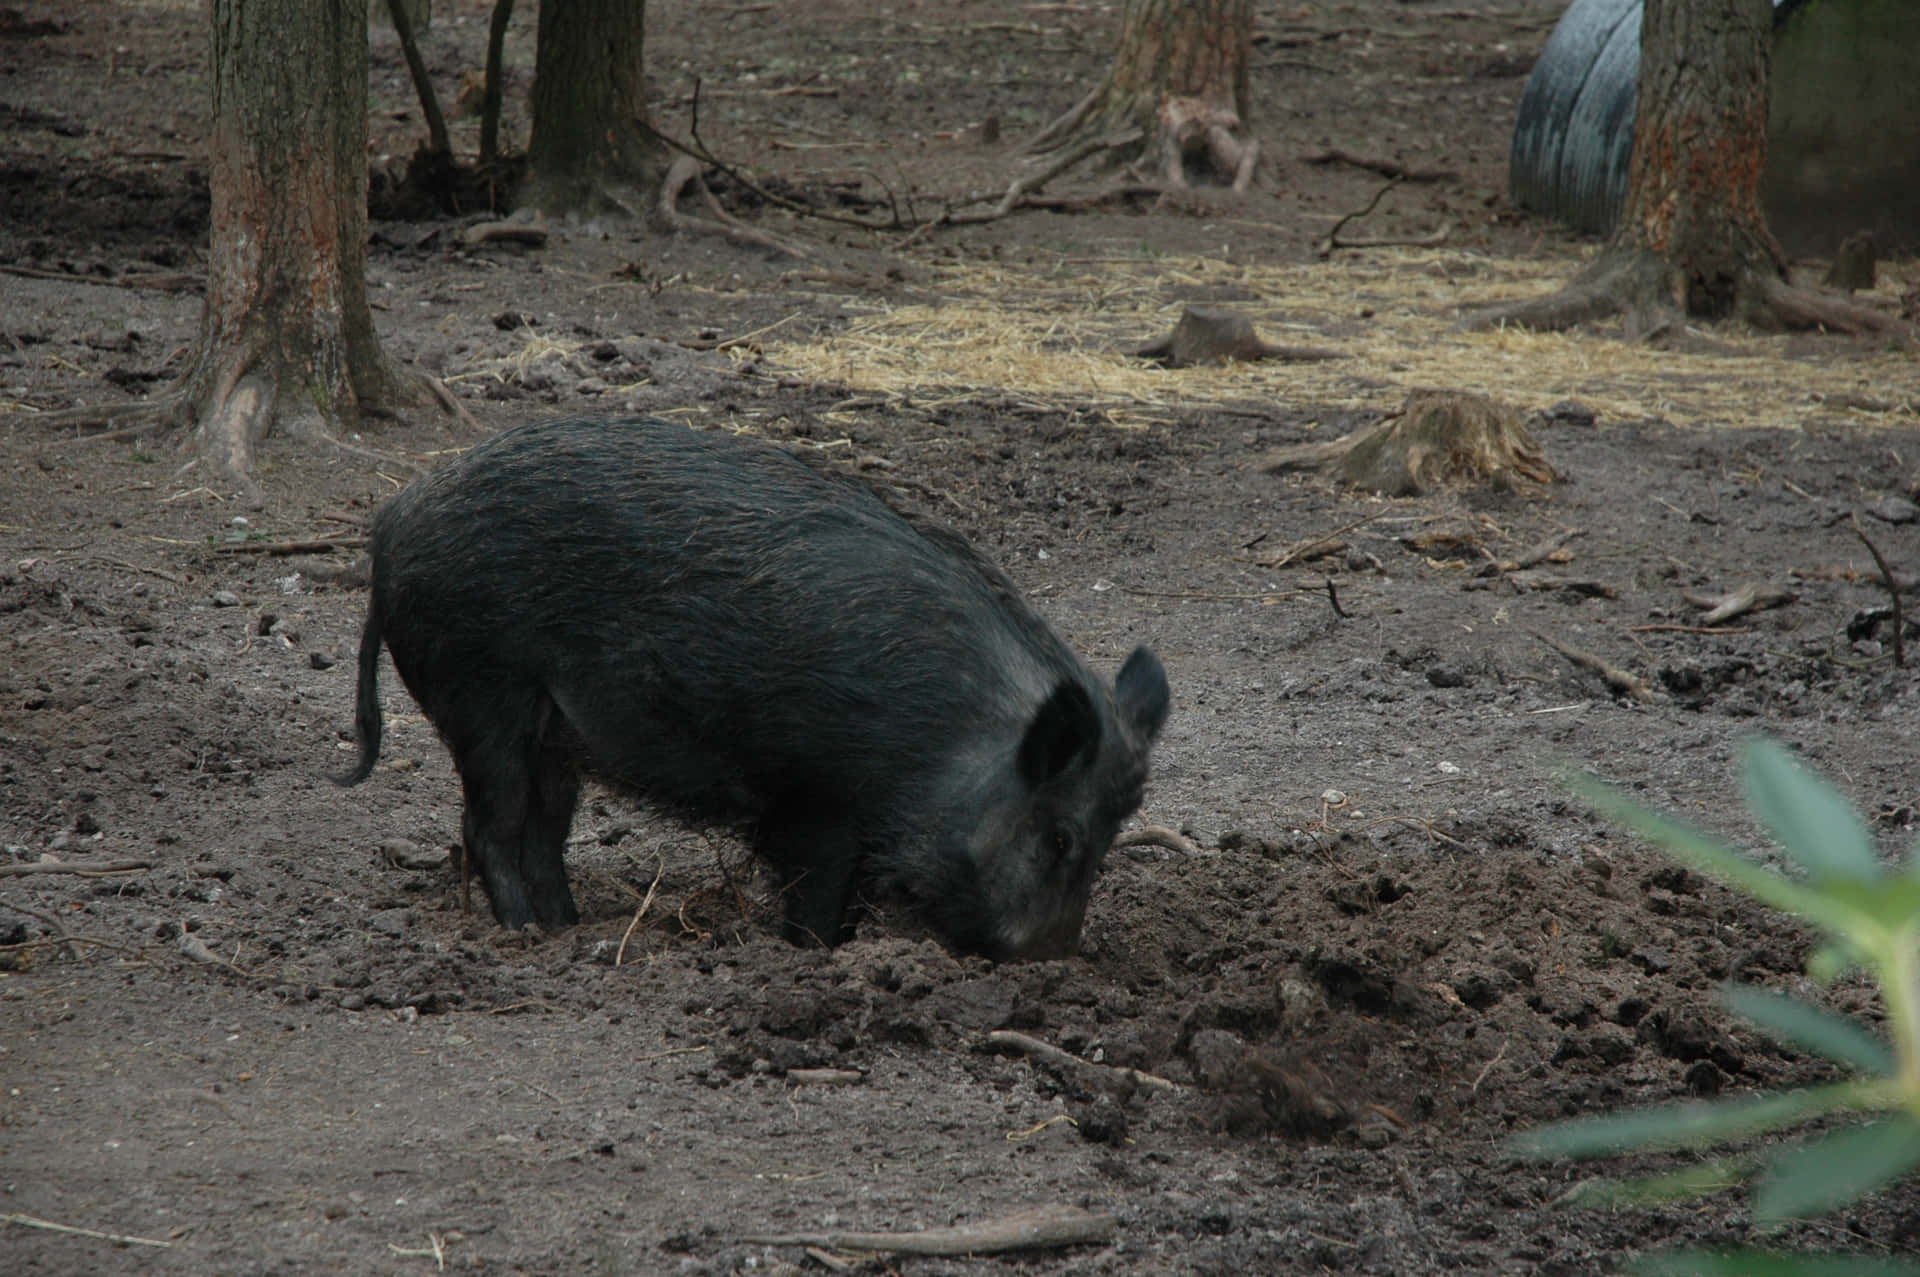 A rocky terrain wild boar runs across the landscape